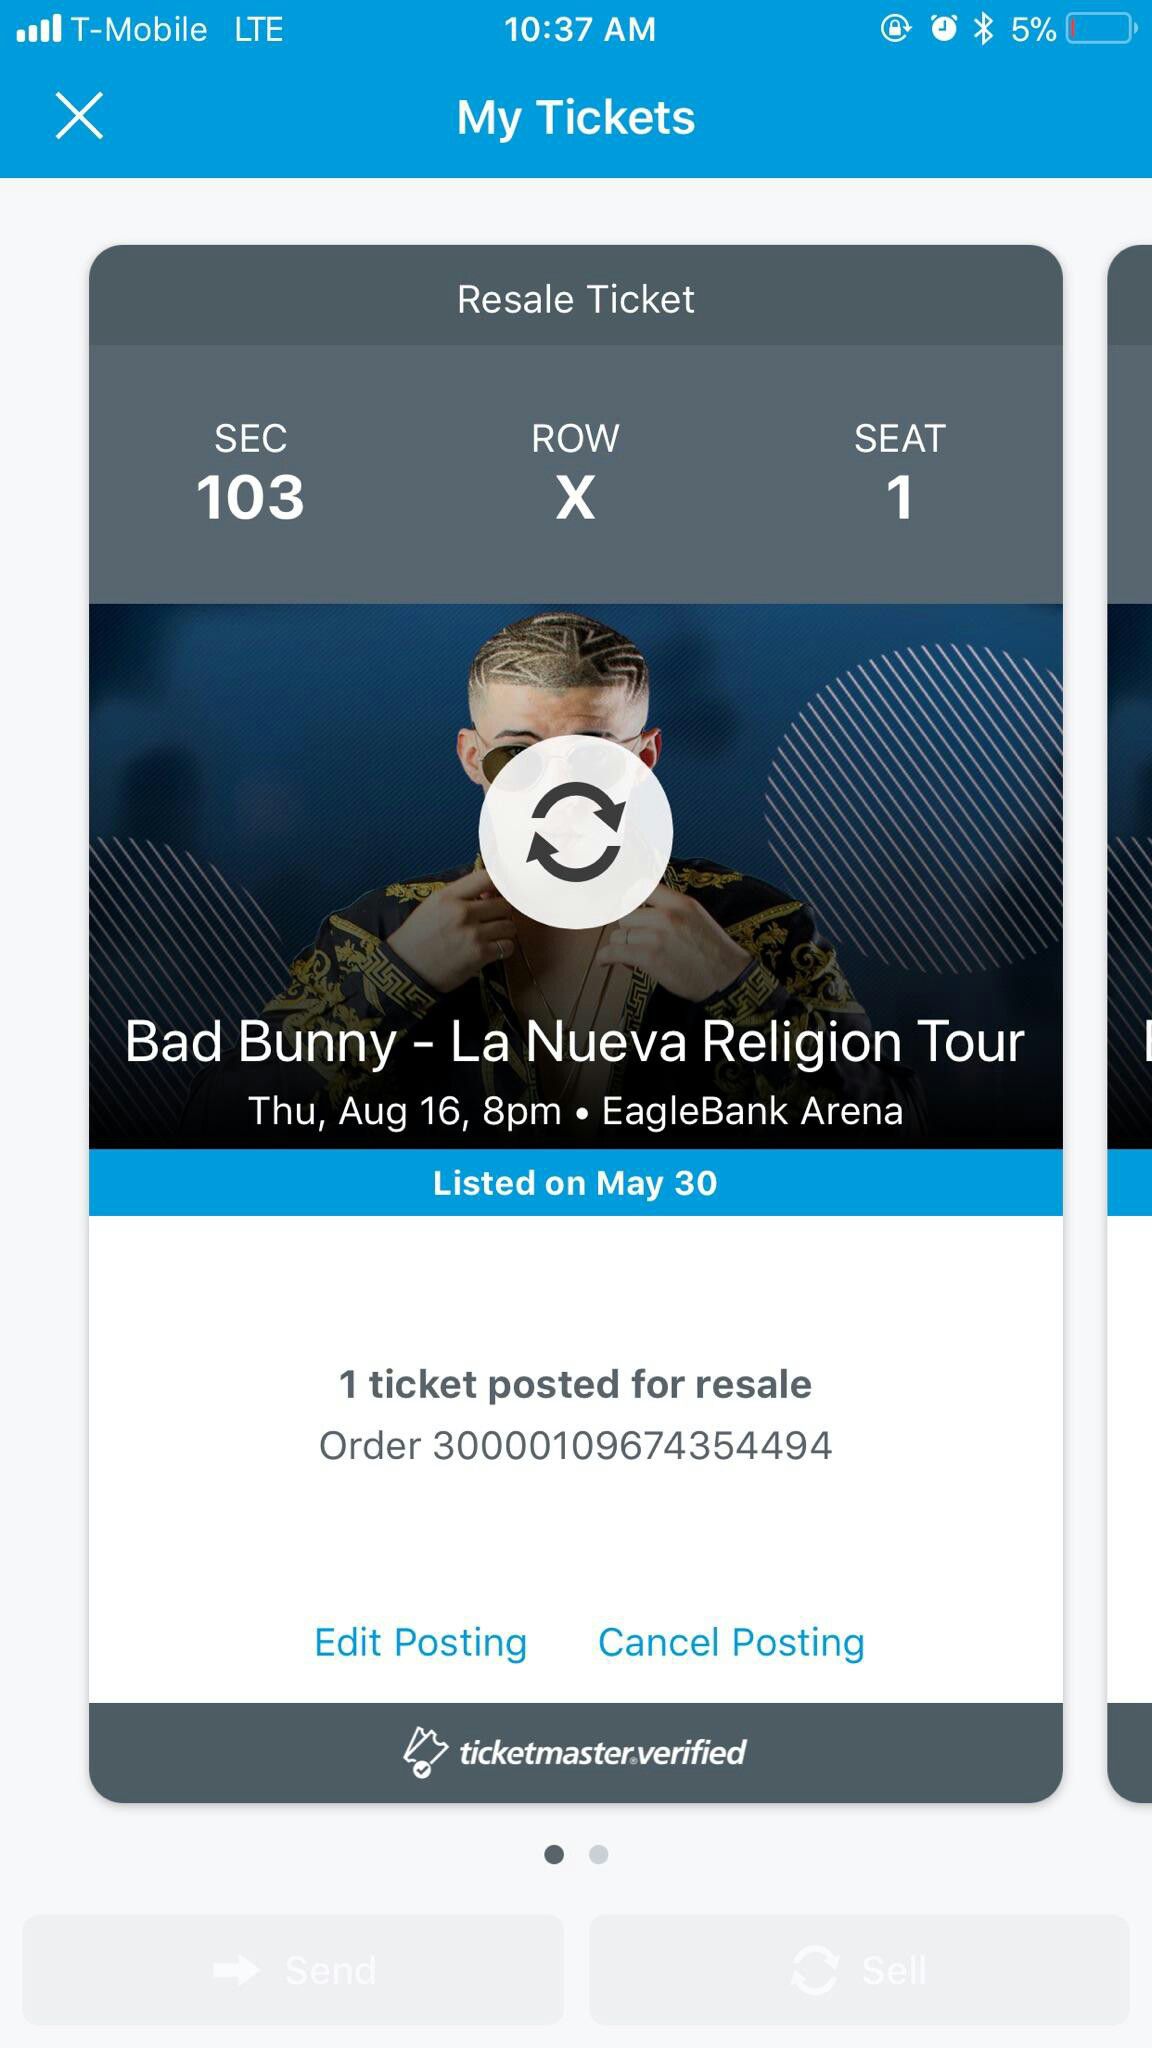 Bad Bunny Nueva religion tour